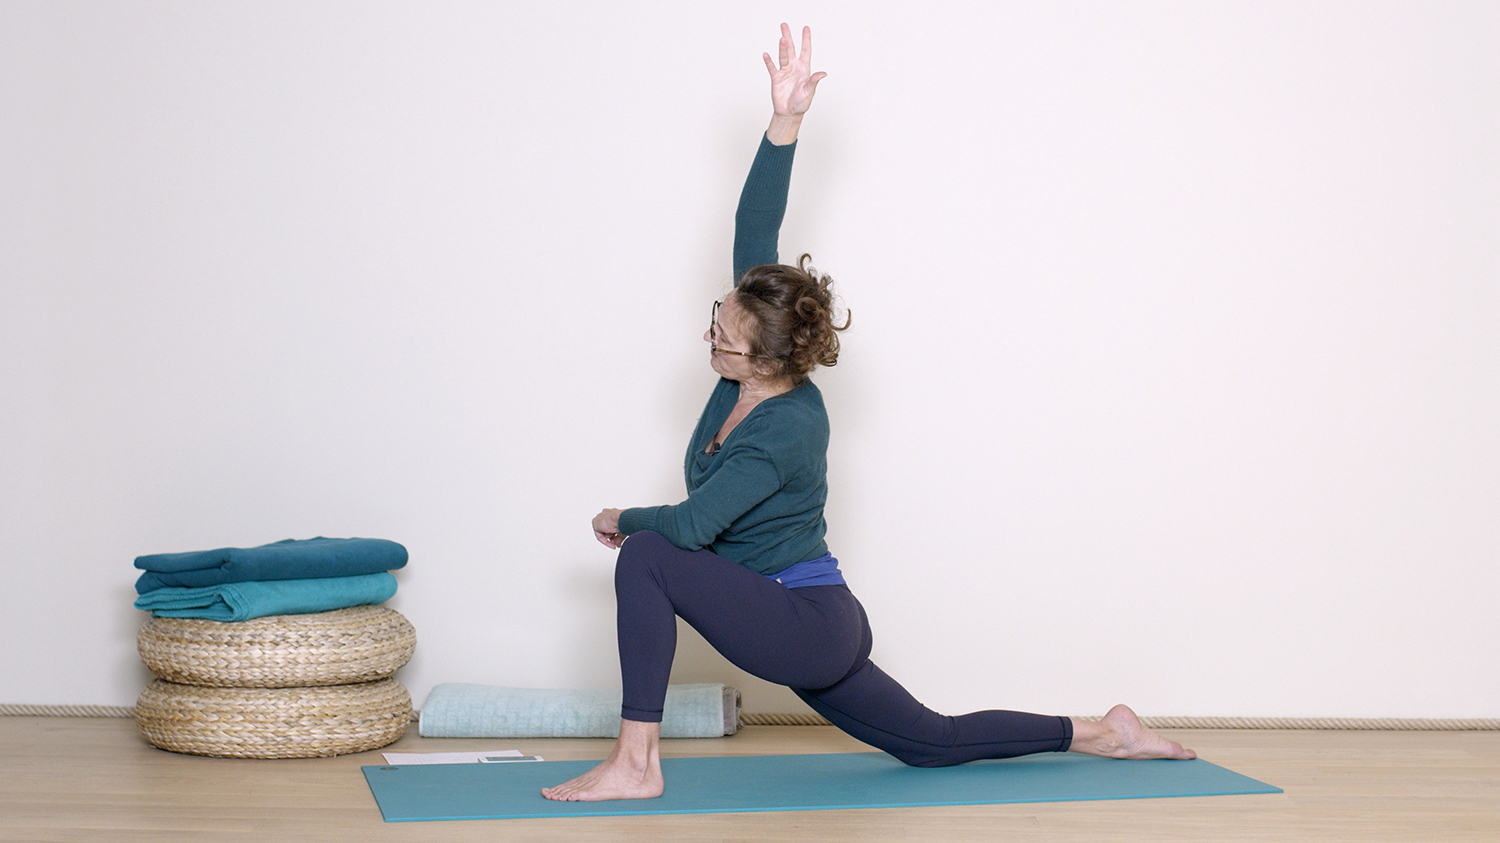 Une énergie calme | Cours de yoga en ligne avec Delphine Denis | Hatha Yoga doux, Restorative Yoga, Yin Yoga